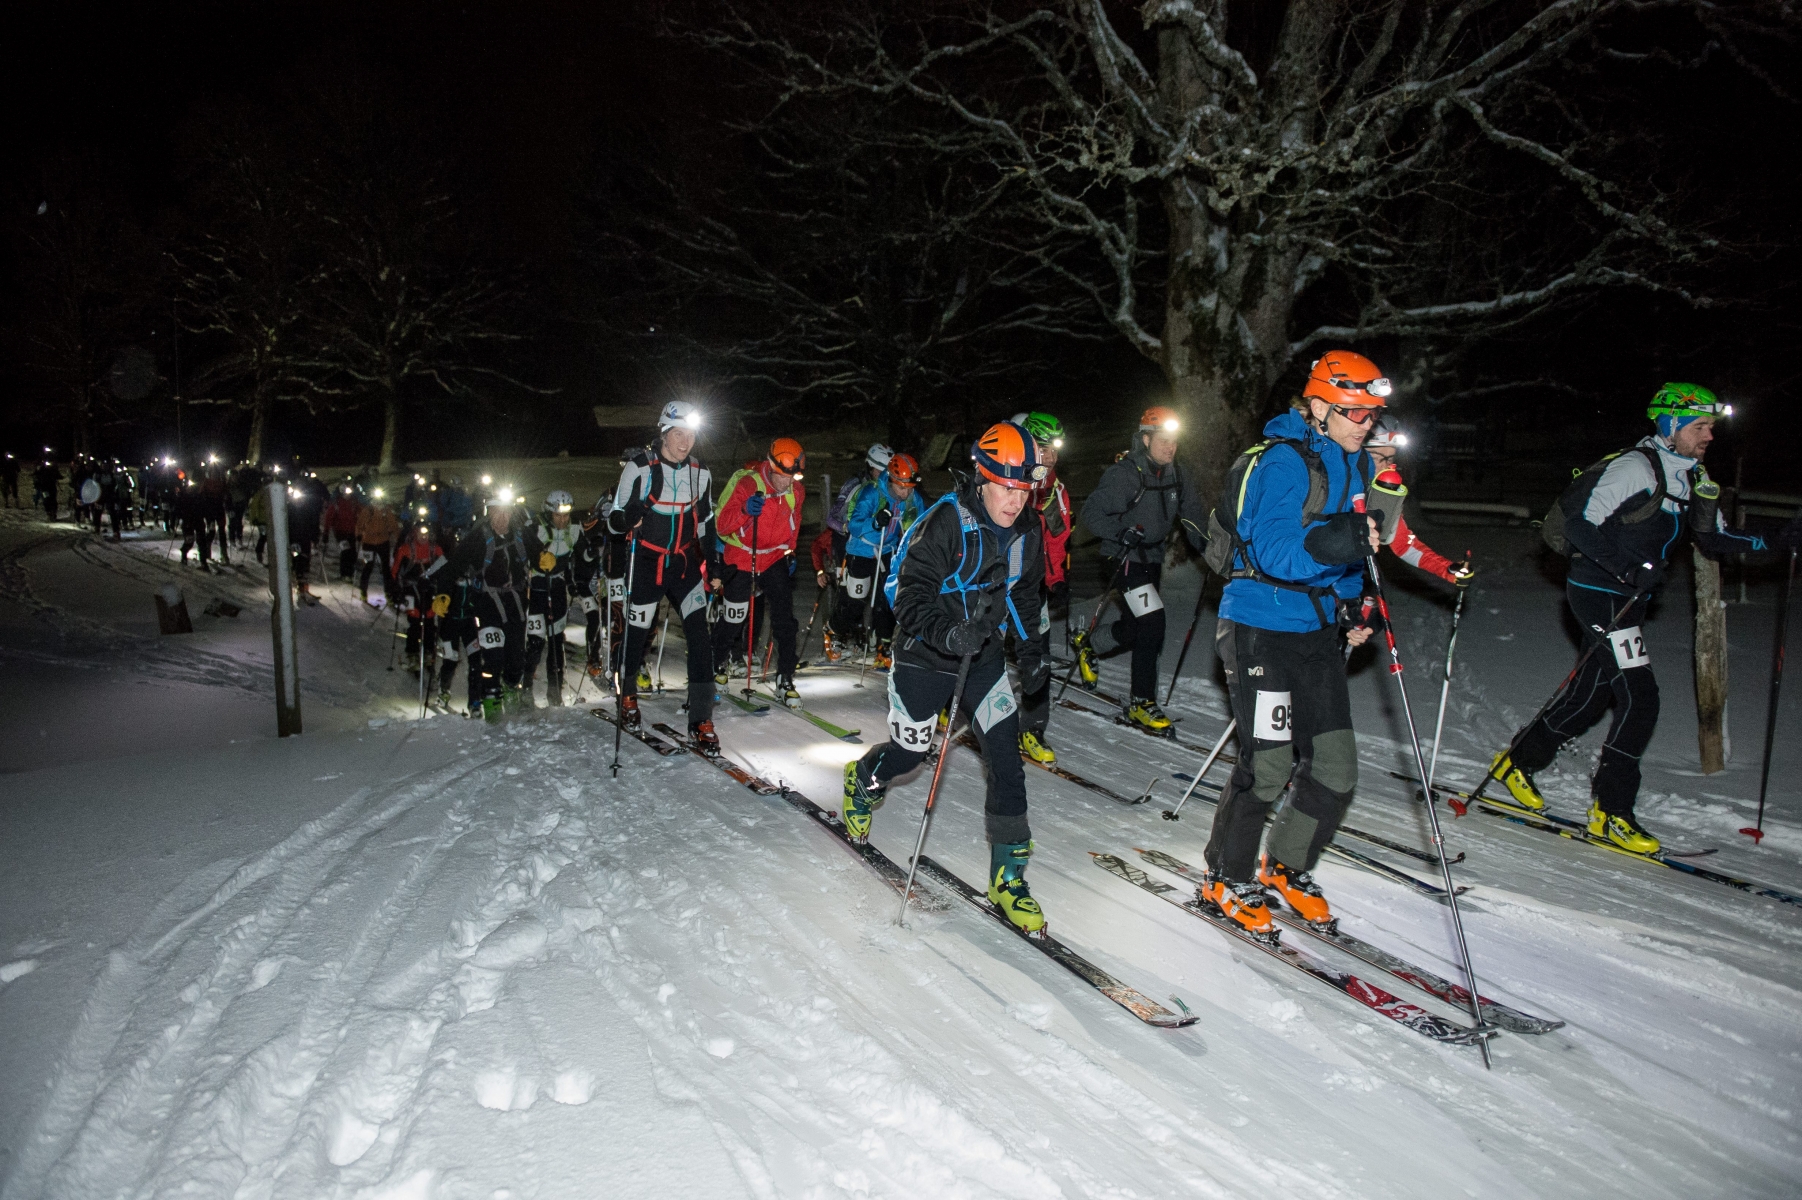 Le comité de la société Ski alpinisme Les Gollières a pris la décision de ne pas reconduire La Nocturne des Gollières en 2017.